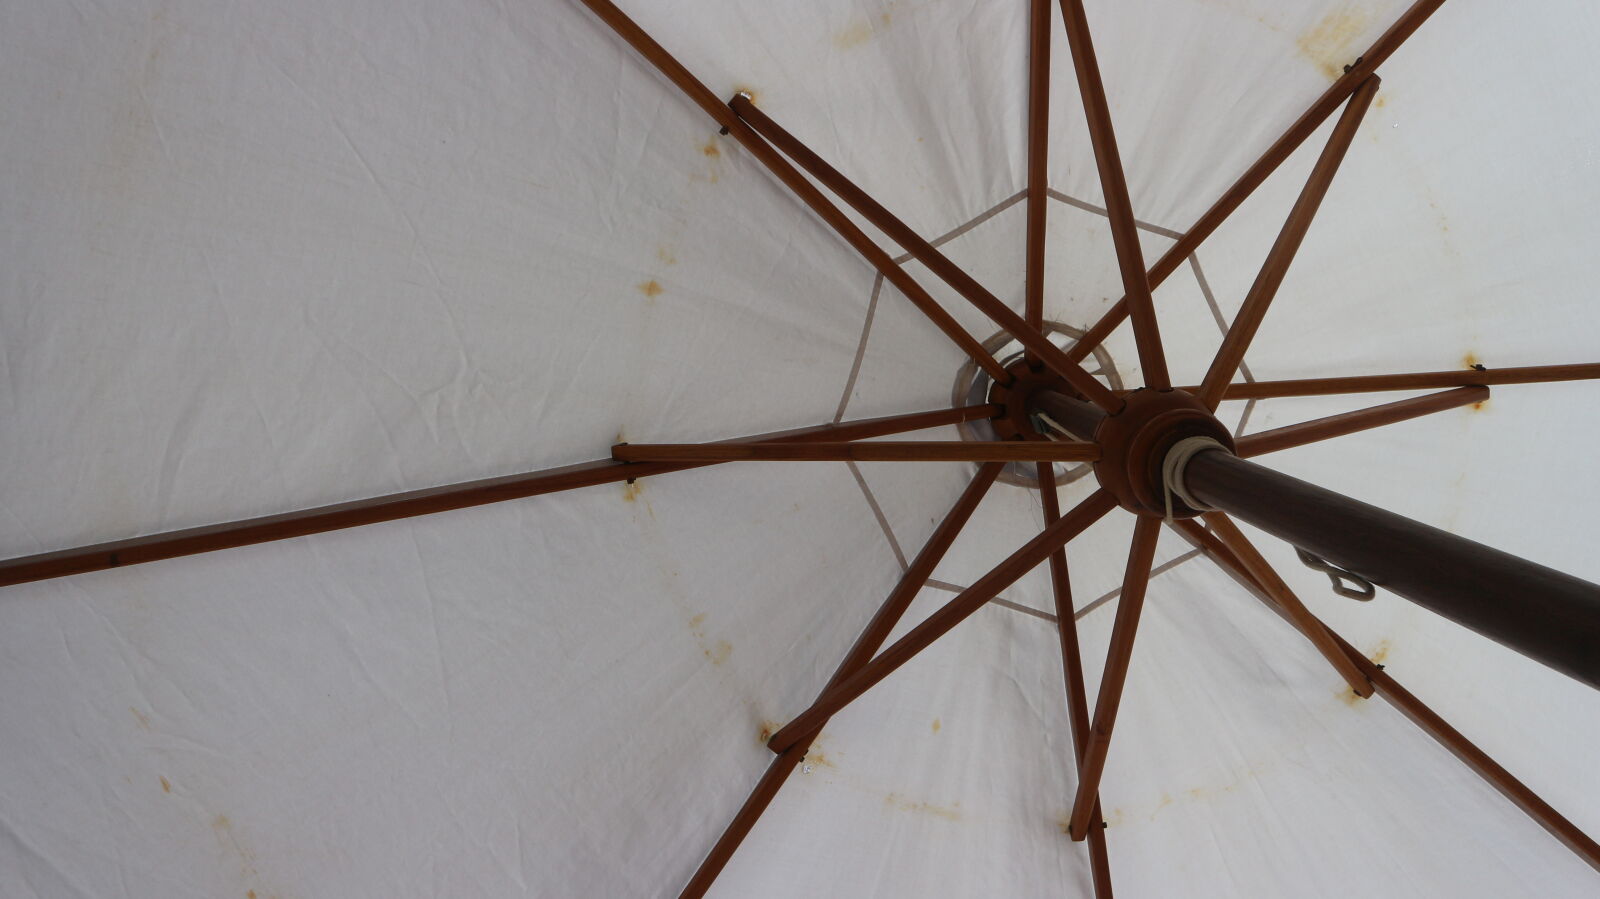 Canon EOS M10 sample photo. Beach, umbrellas, large, umbrella photography